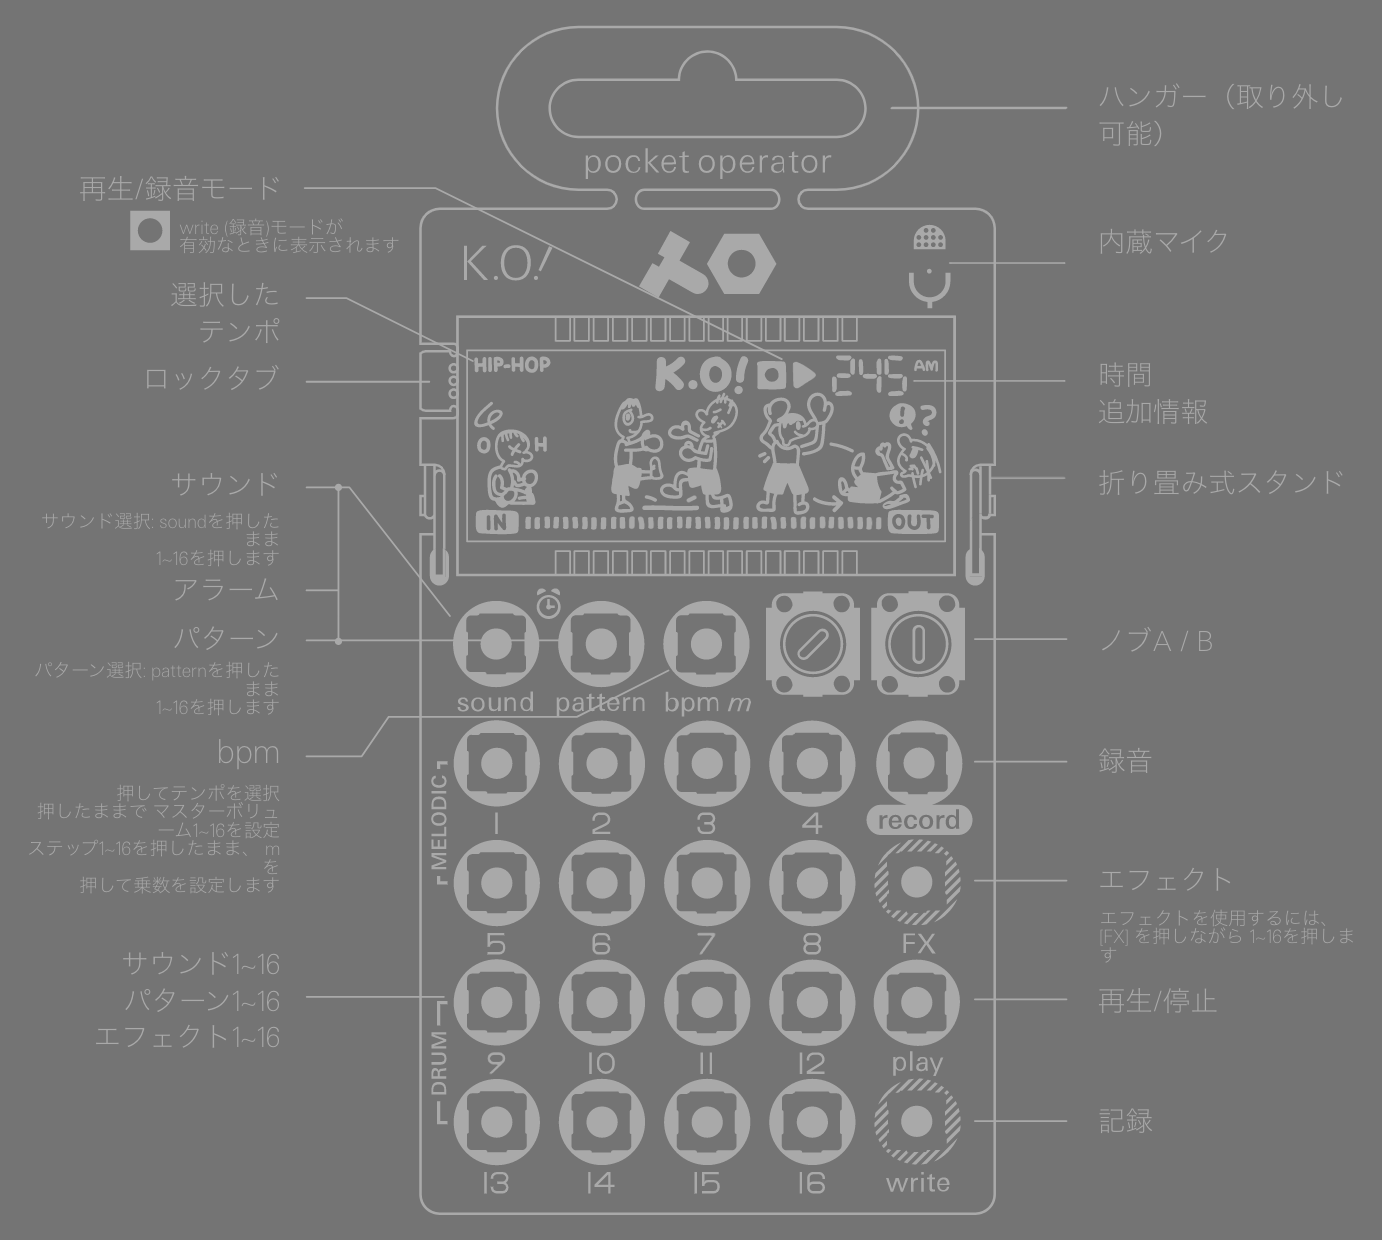 PO-33 K.O! ポケットサイズのサンプラー / シーケンサー/ シーケンサー